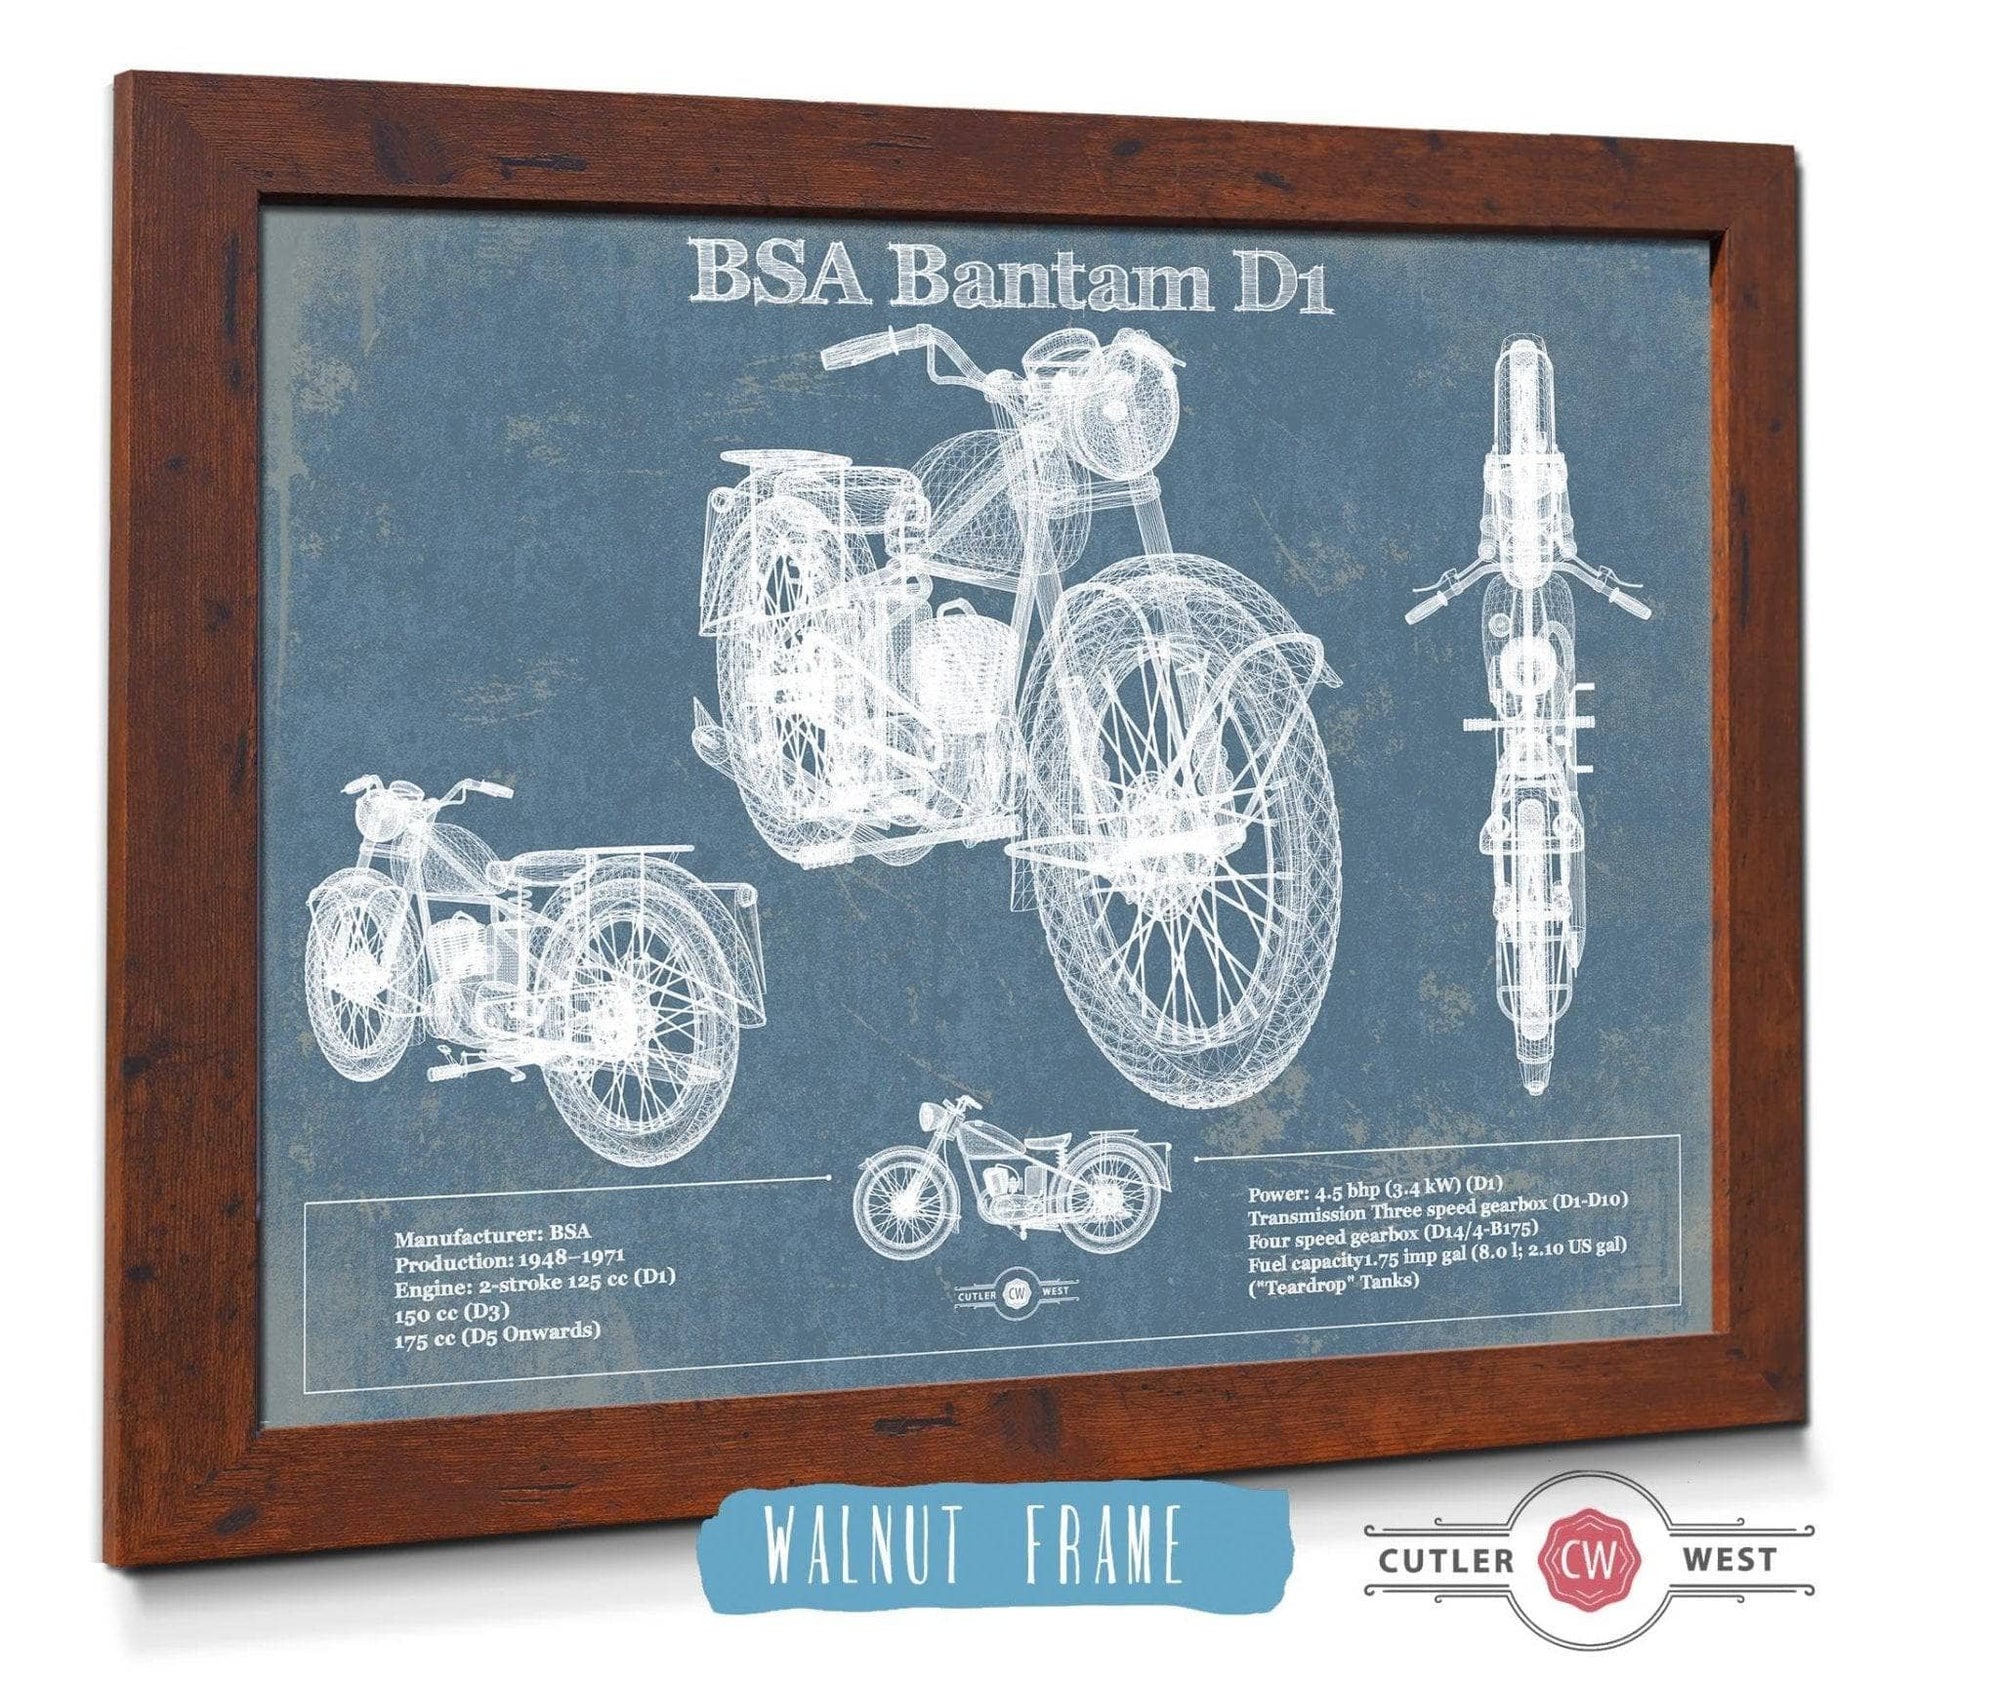 Cutler West 14" x 11" / Walnut Frame BSA Bantam D1 Blueprint Motorcycle Patent Print 833110063_46298